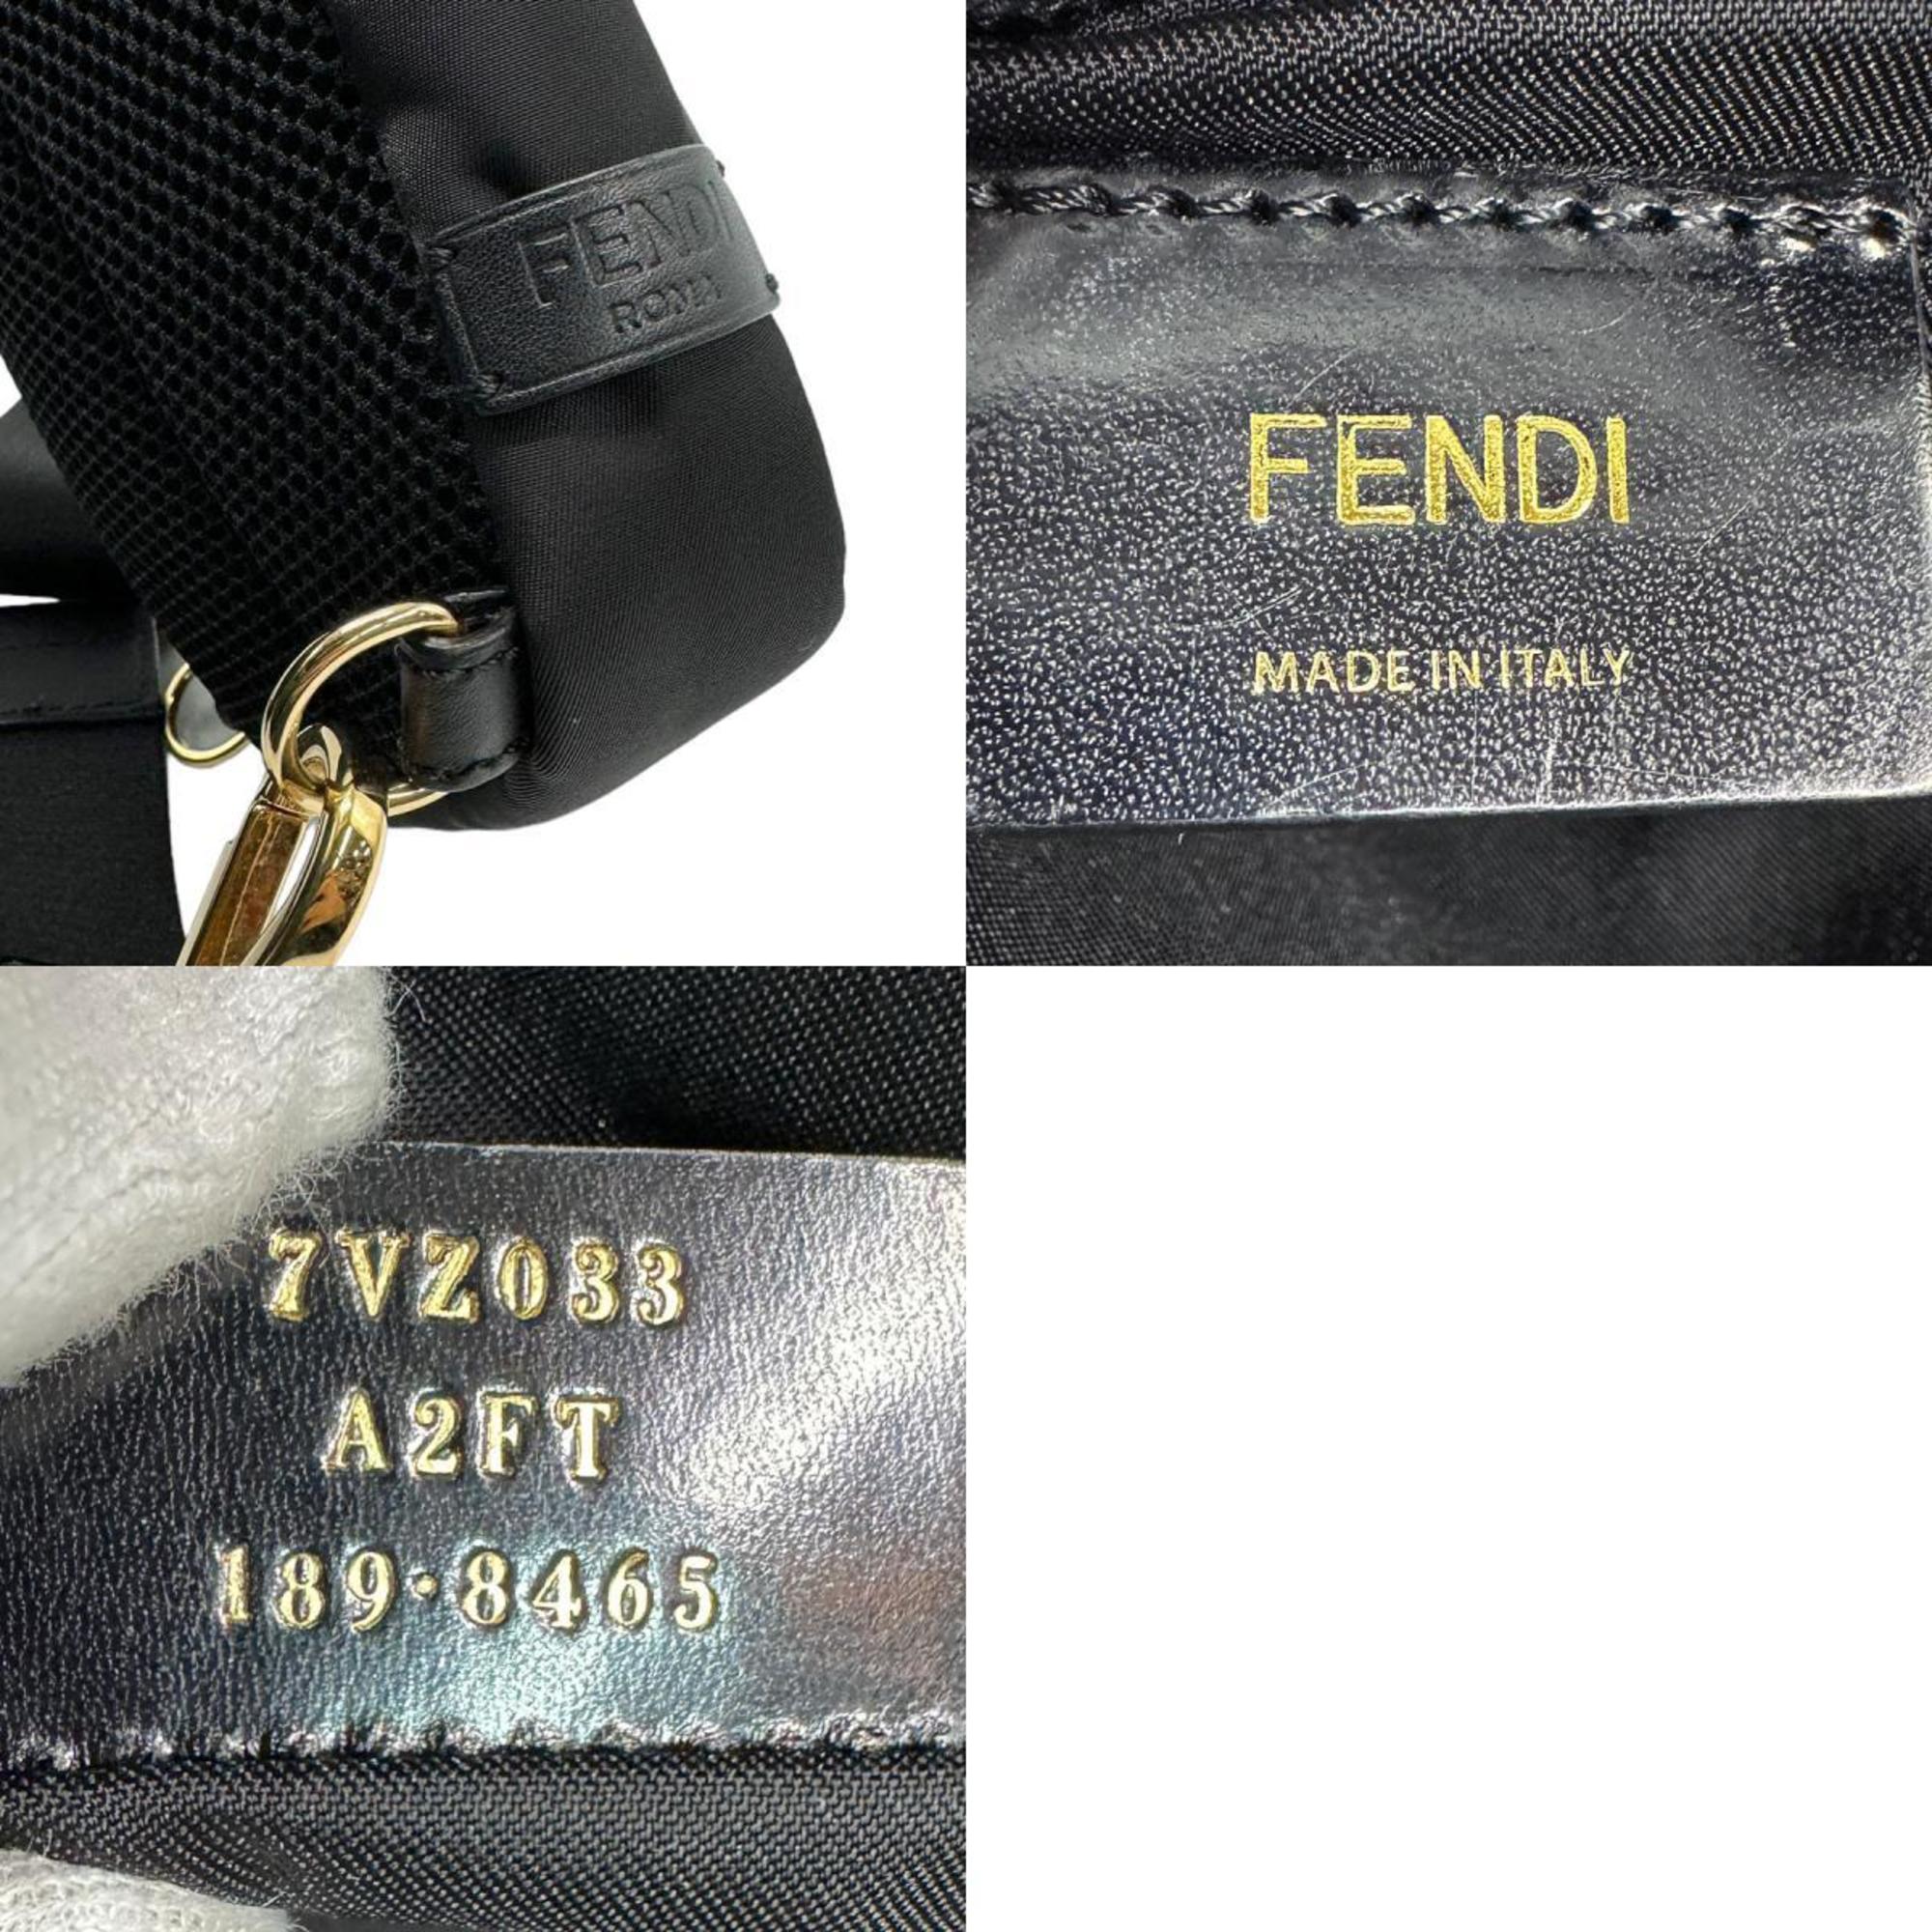 FENDI Bugs Eye Nylon Body Bag Black Men's 7VZ033 A2FT z1304